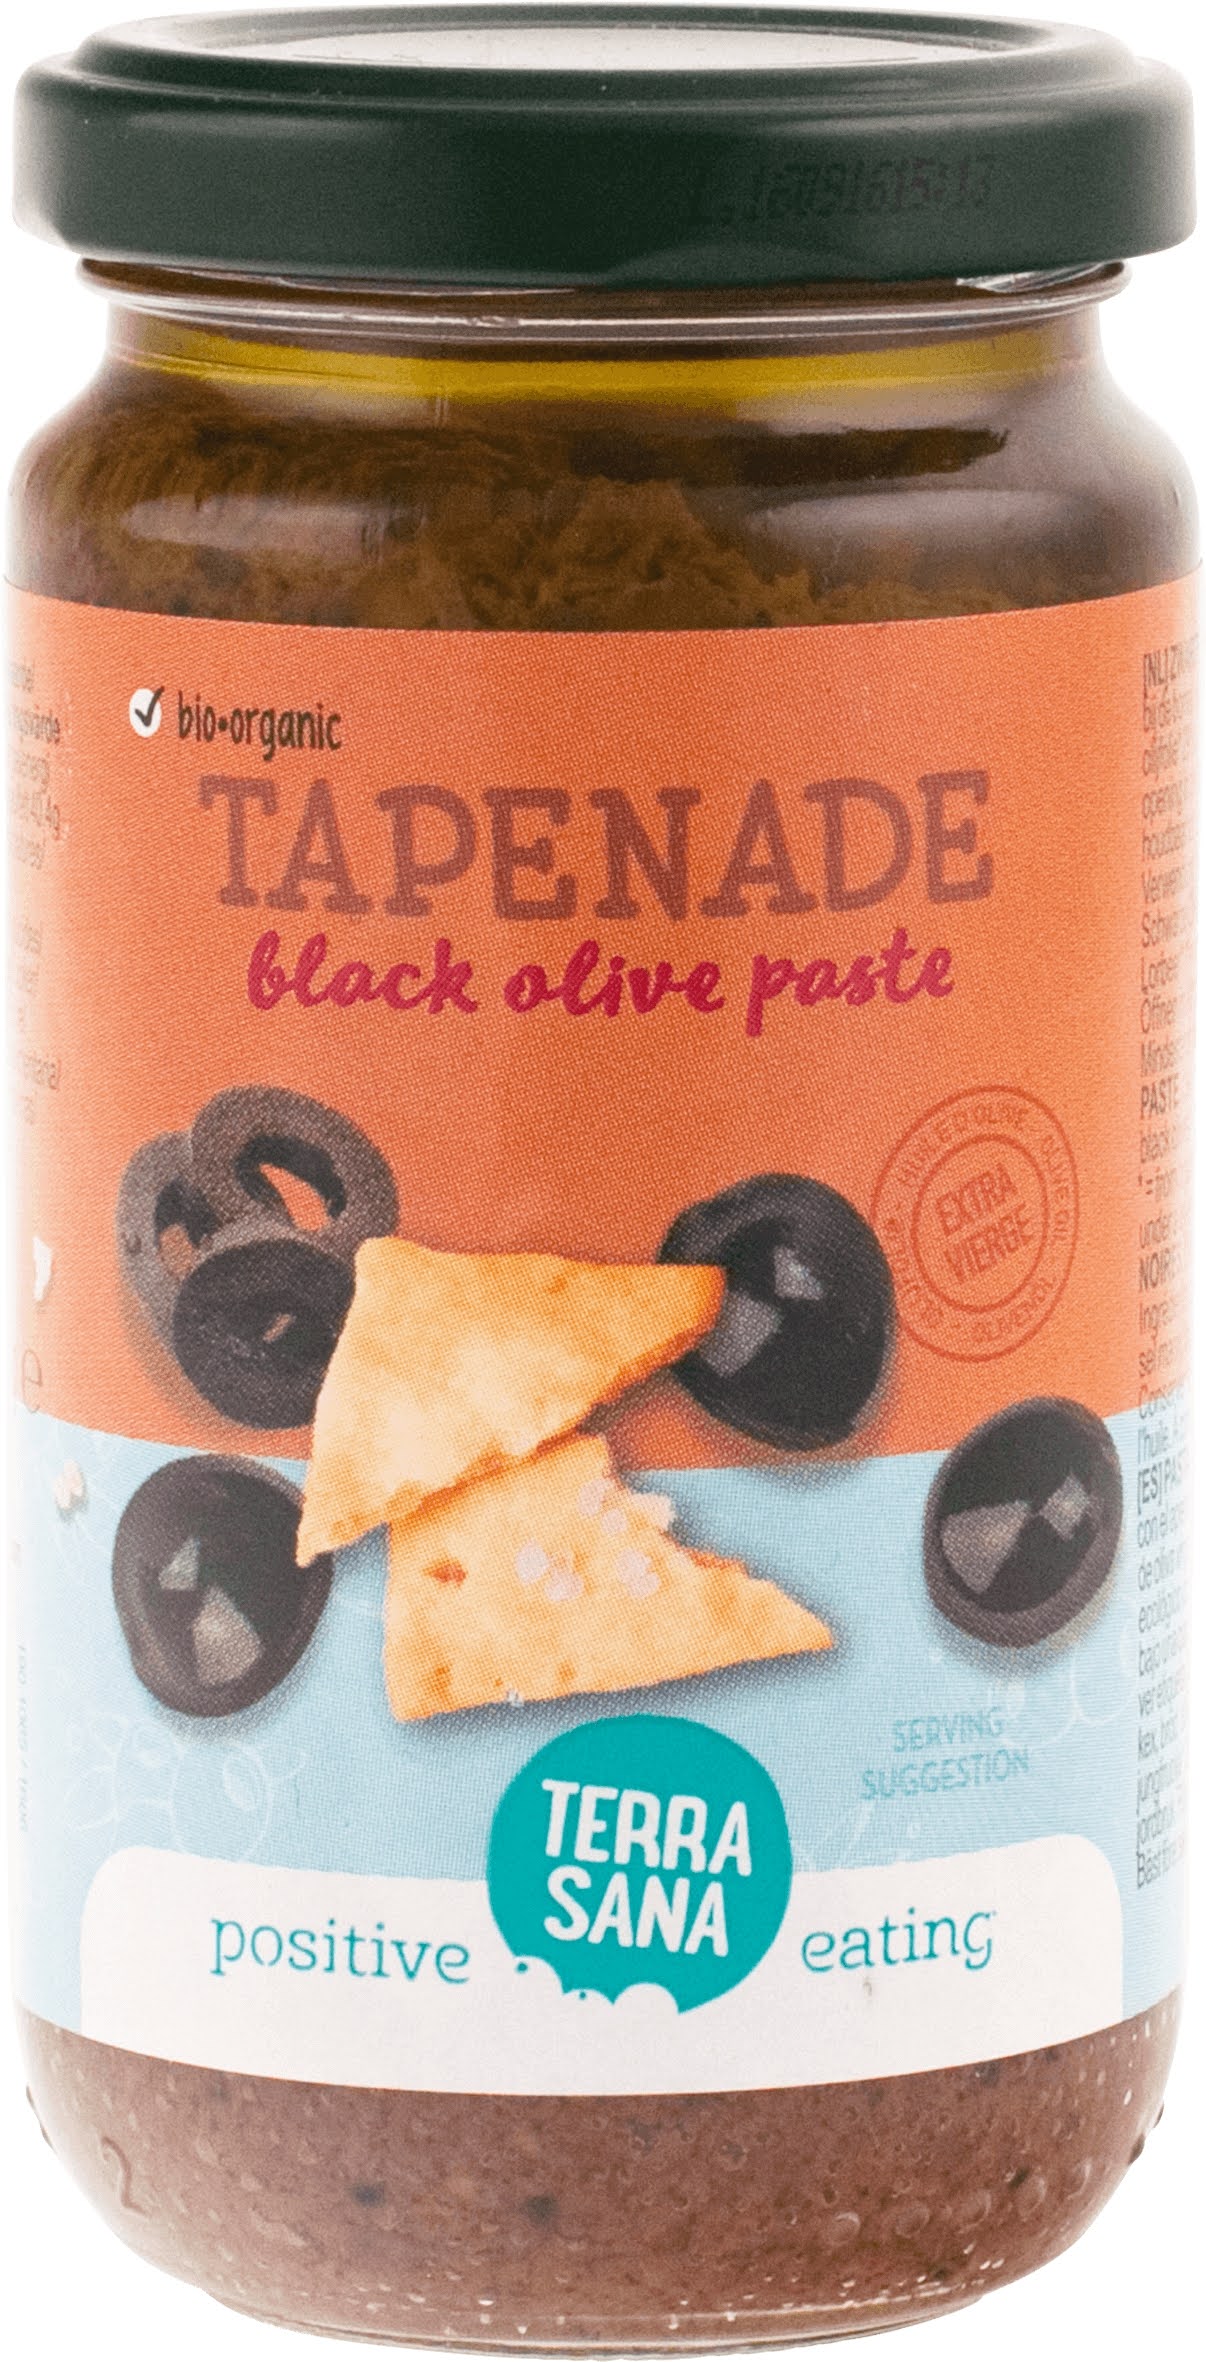 Tapenade - Schwarze Olivenpaste